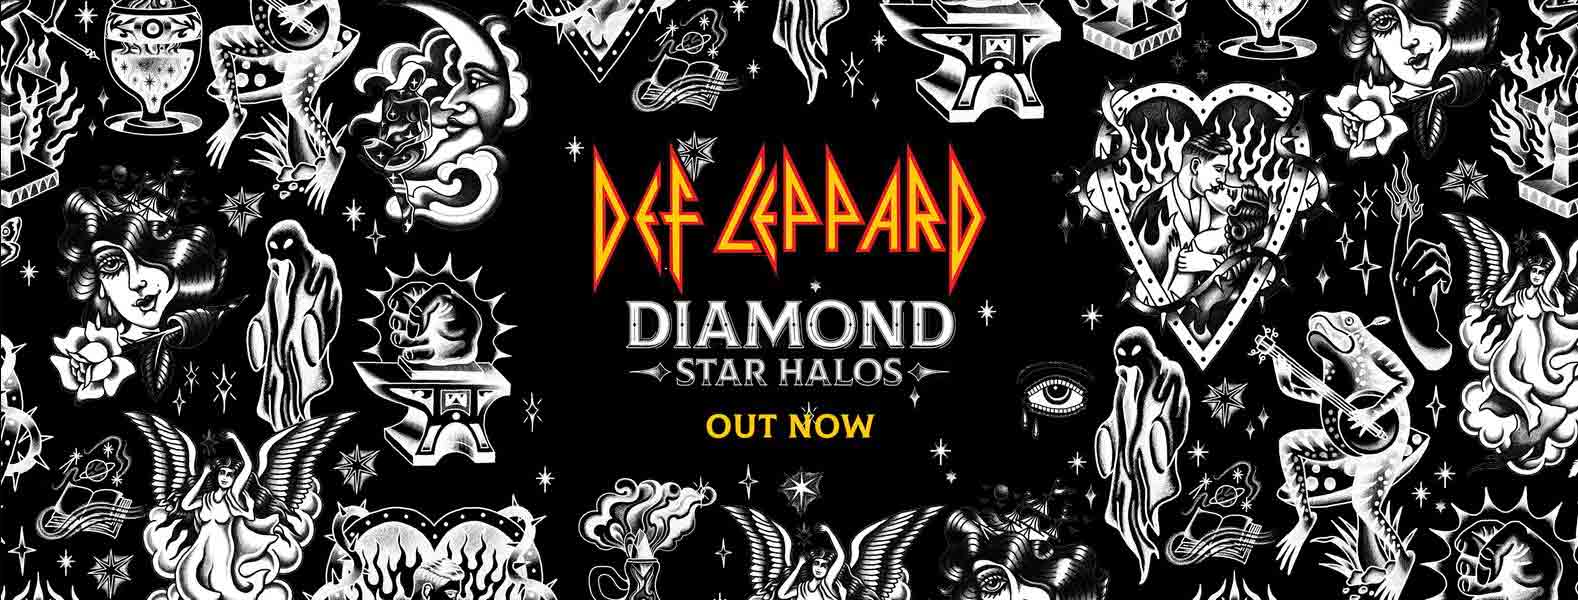 def-leppard-diamond-star-halos-review